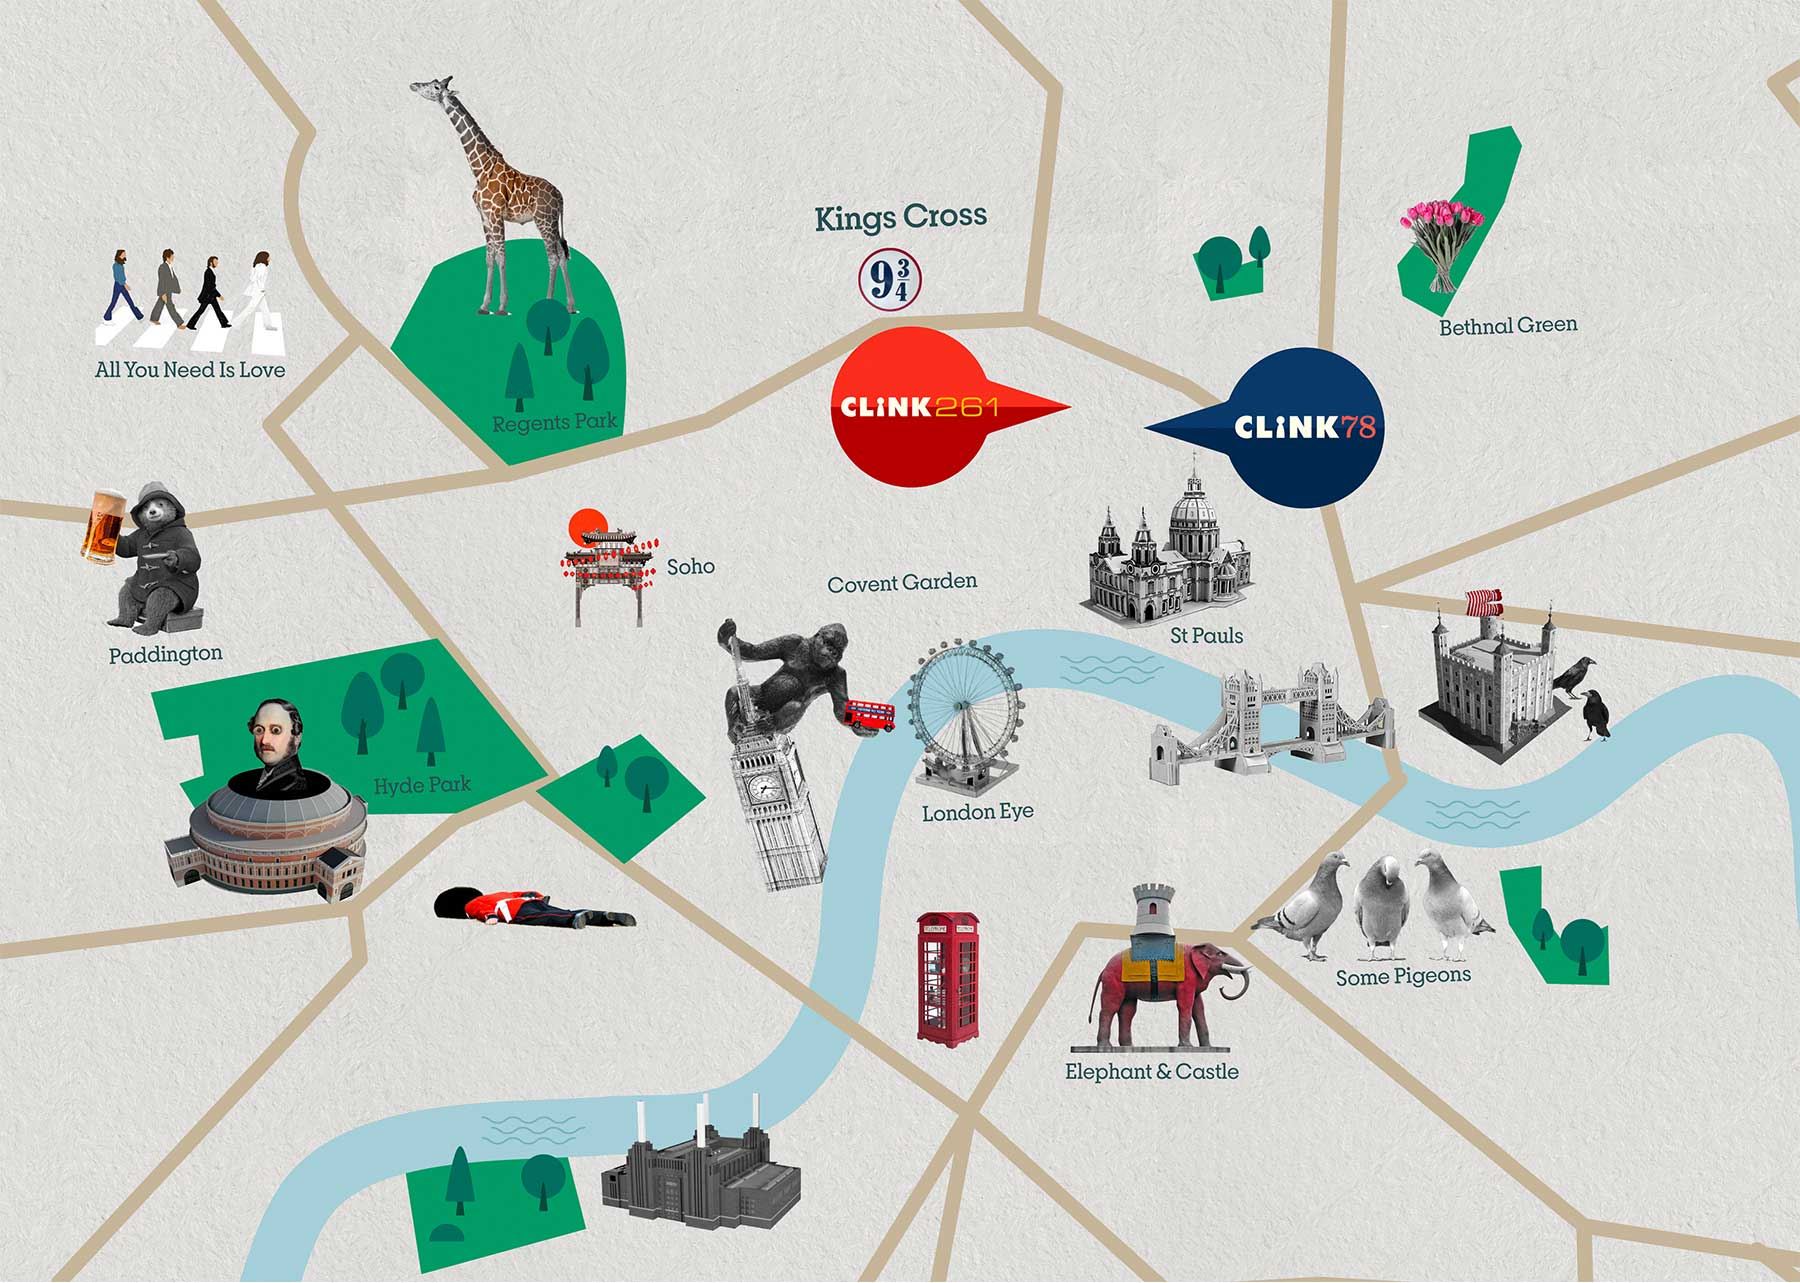 Die Attraktionen von London City, zusammen mit Clink 261 und Clink 78 auf der Karte